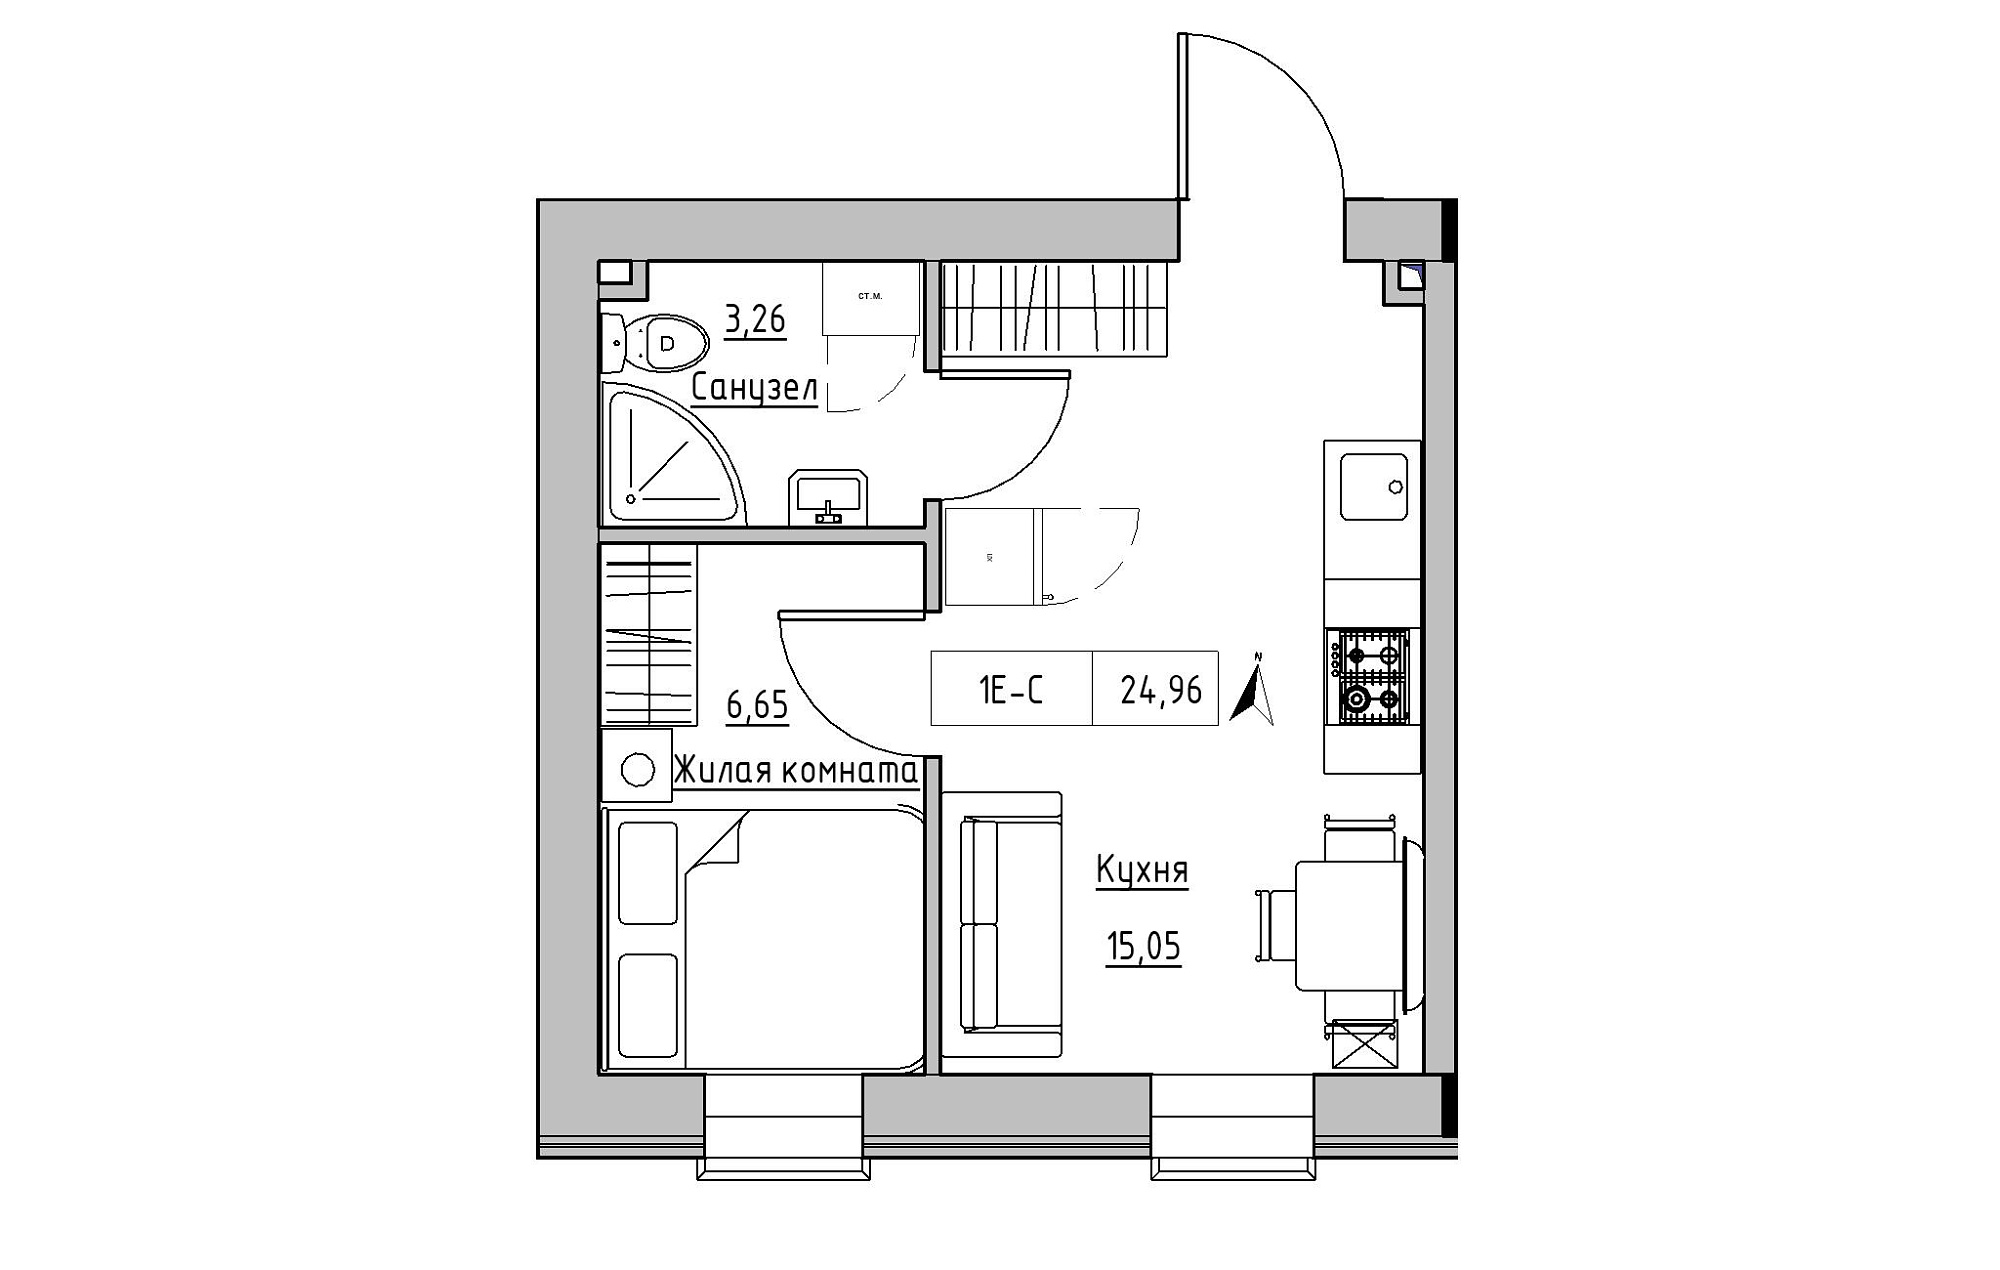 Планування 1-к квартира площею 24.96м2, KS-019-03/0012.